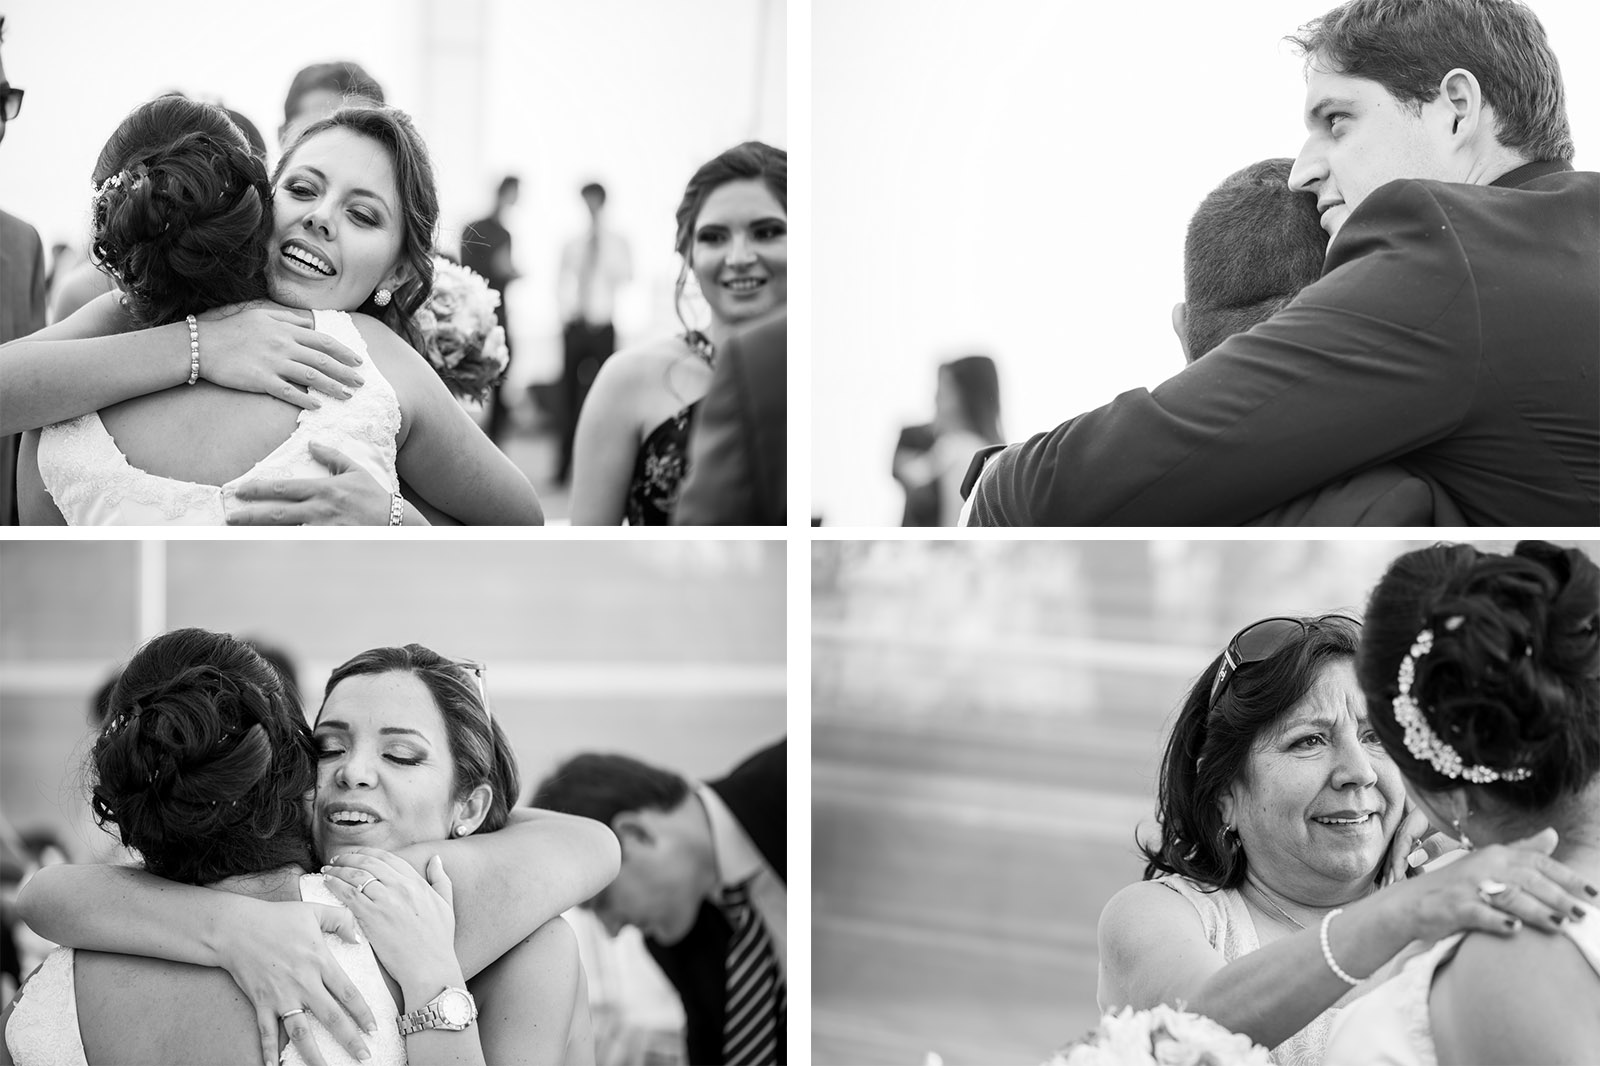 Fiorella Lucho aldo aguilar fotografo fotografia boda sesion novios retrato novia novio arequipa peru 44 hotel lago abrazo